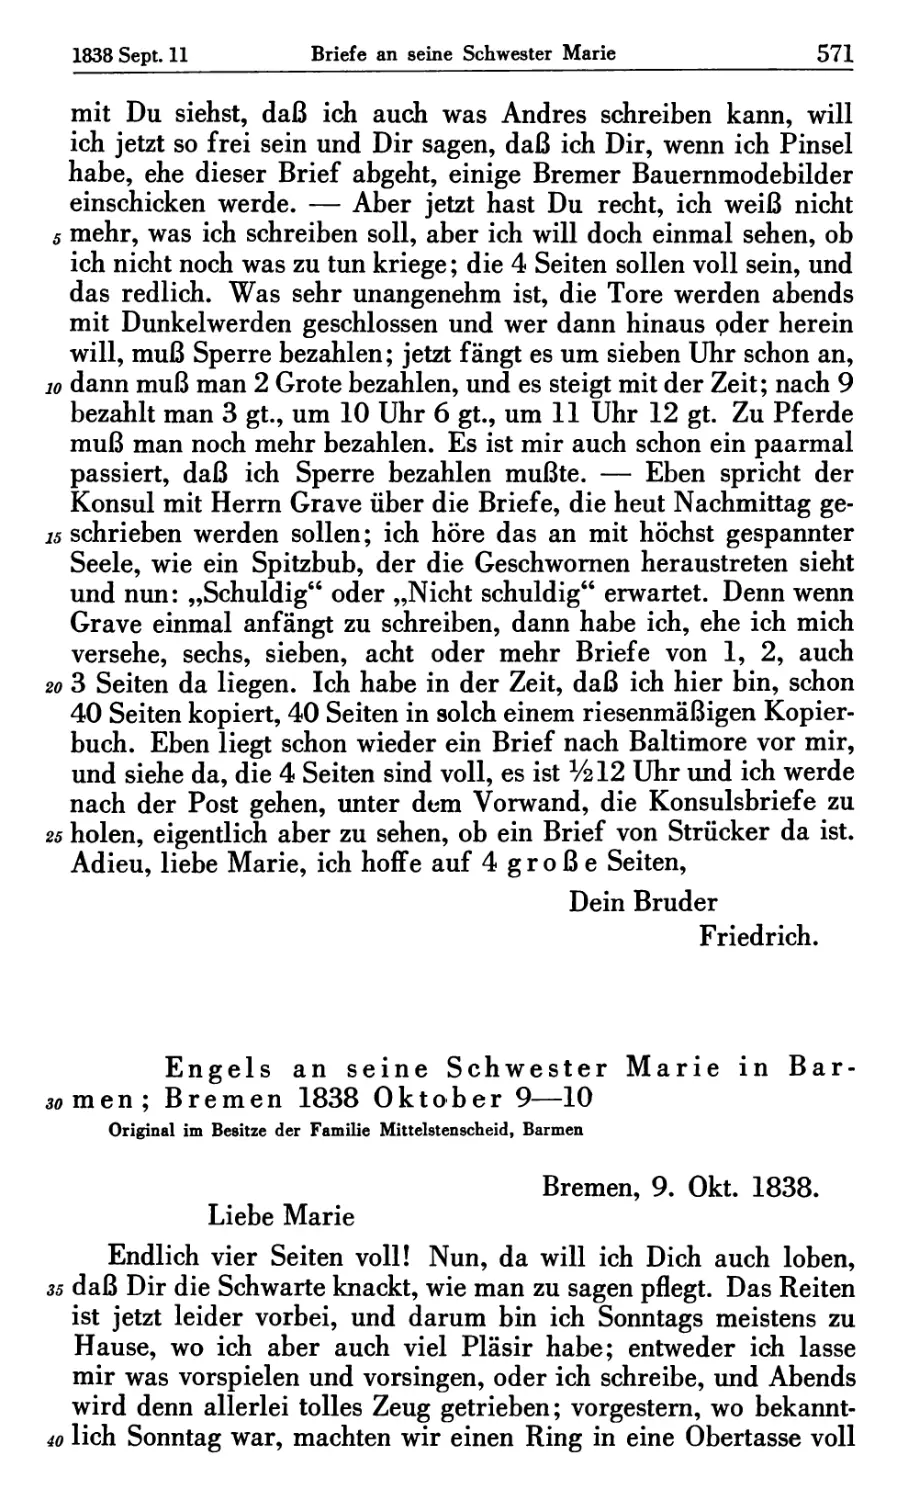 Engels an seine Schwester Marie in Barmen; Bremen 1838 Oktober 9-10